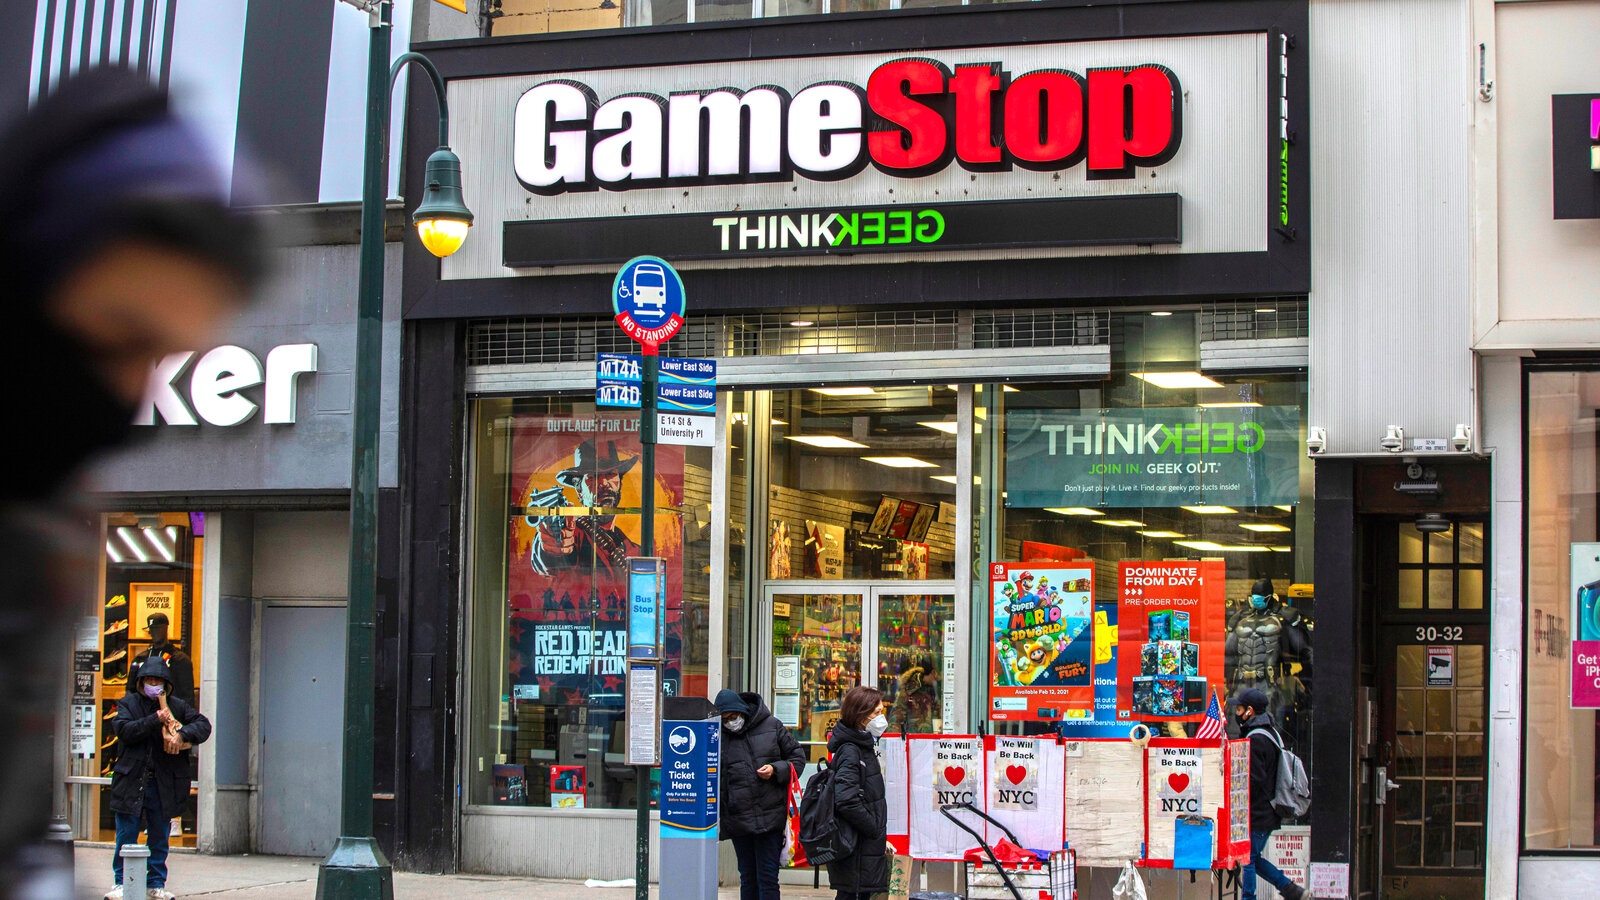 Cơn sốt GameStop lan ra toàn cầu khi binh đoàn nhỏ lẻ nhắm đến cổ phiếu bị bán khống